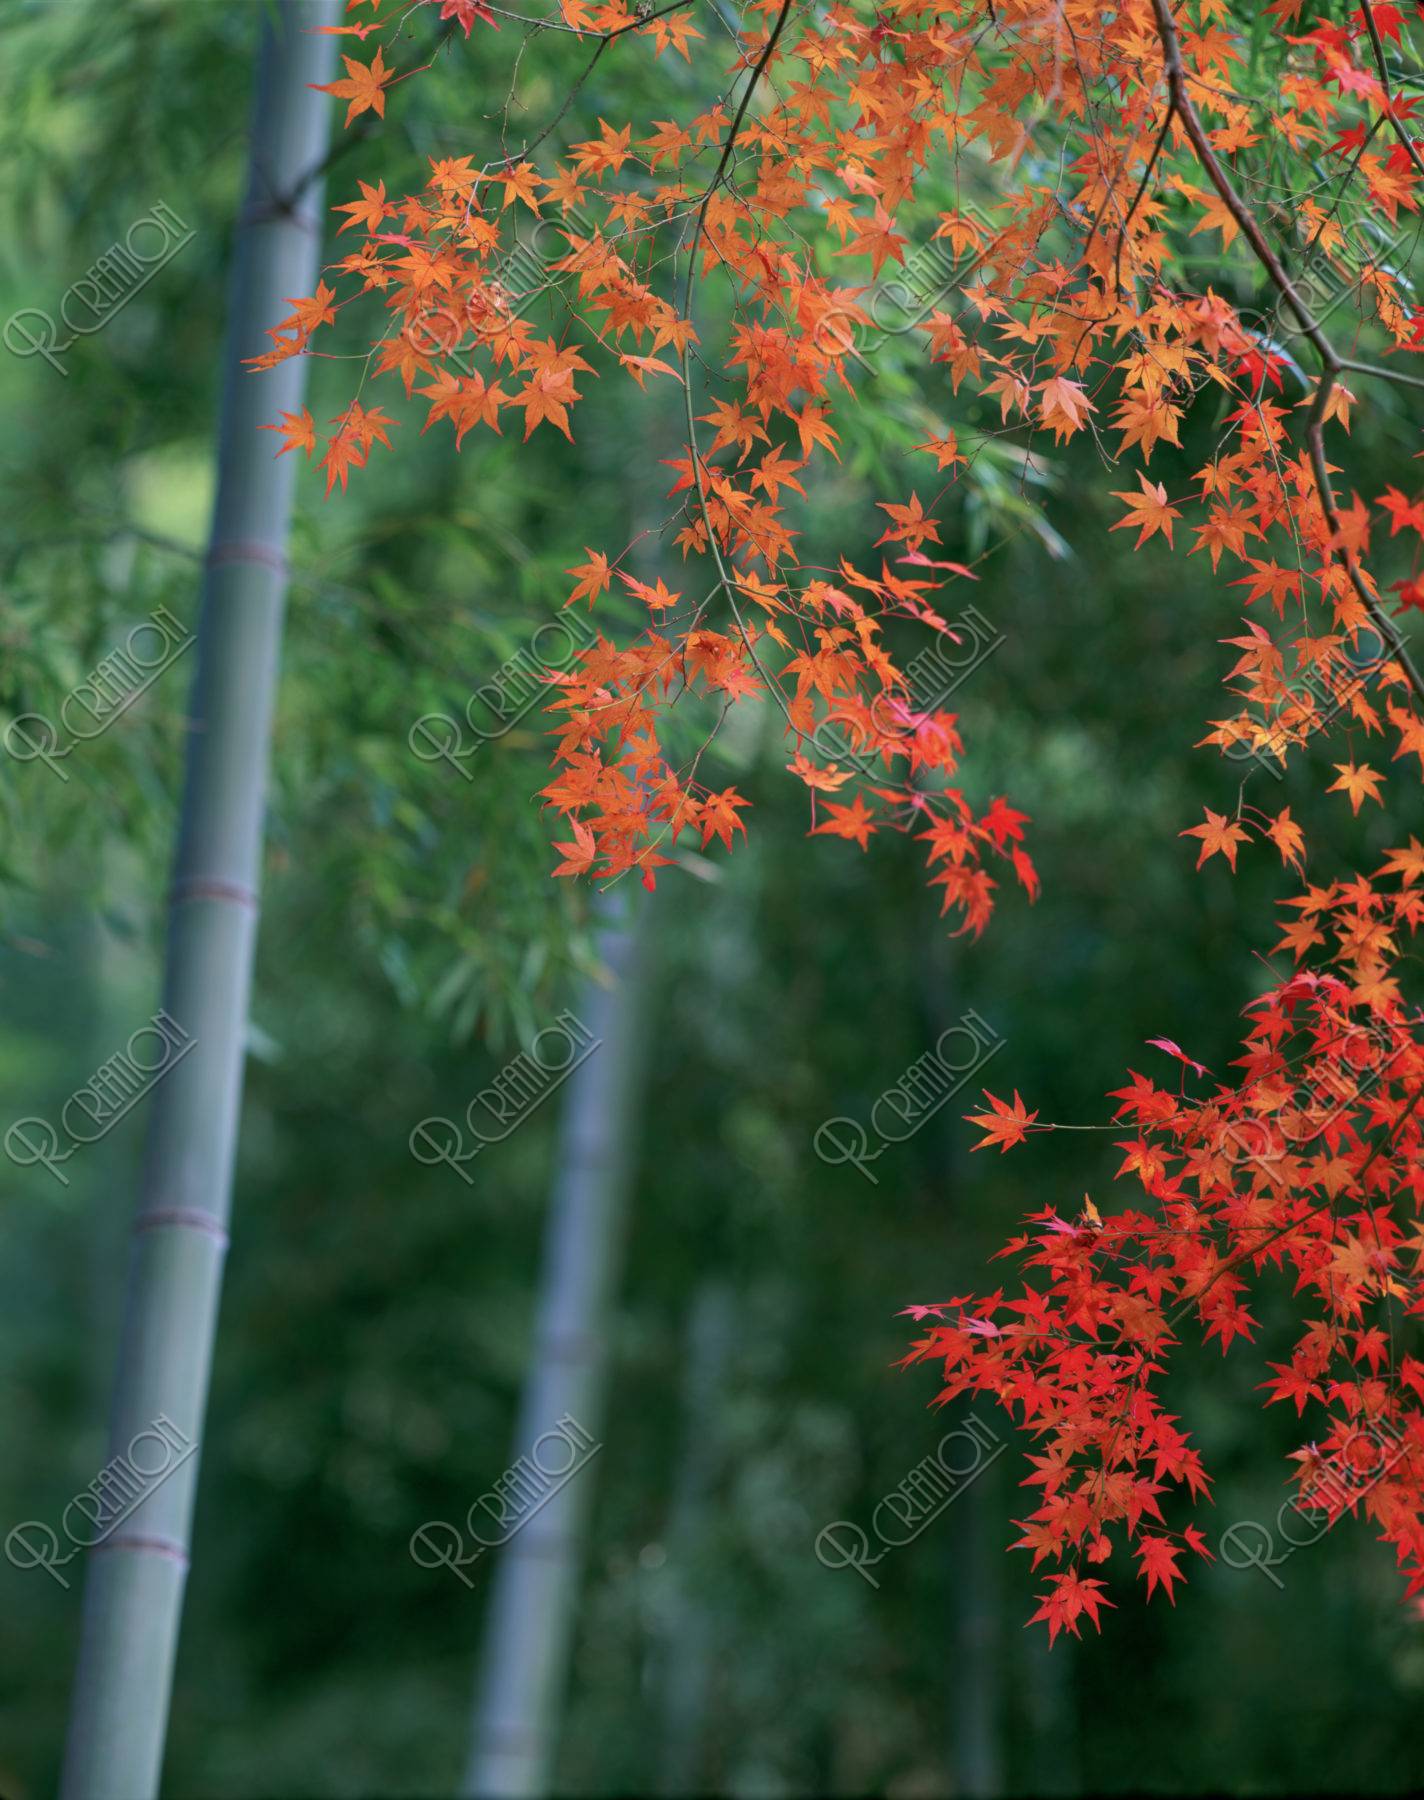 竹林と紅葉